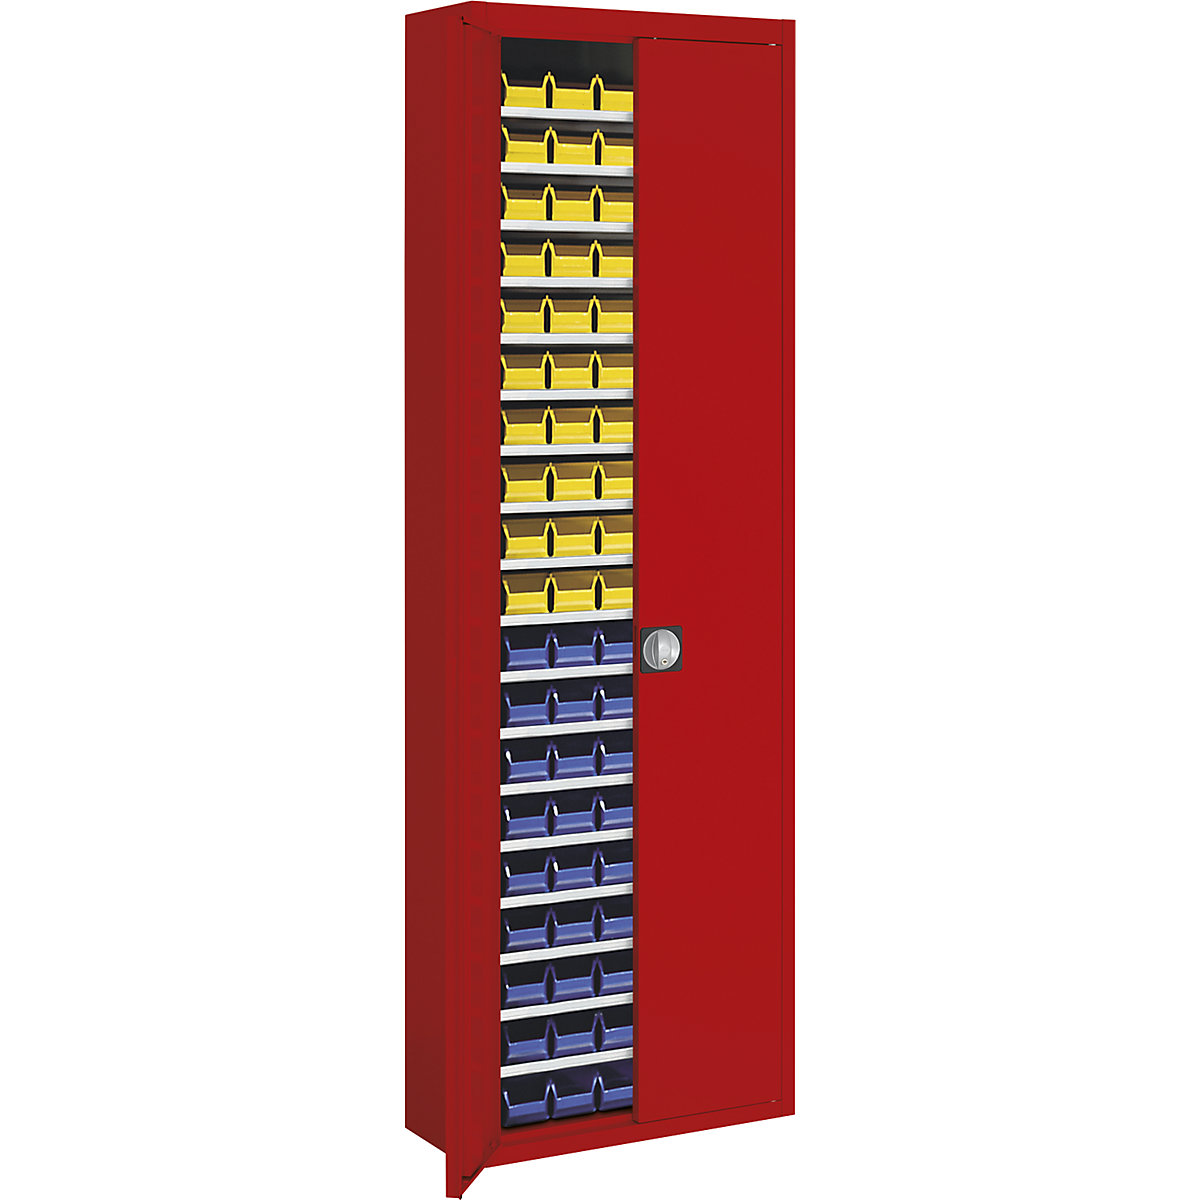 Raktári szekrény nyitott tárolódobozokkal – mauser, ma x szé x mé 2150 x 680 x 280 mm, egyszínű, piros, 114 doboz-12